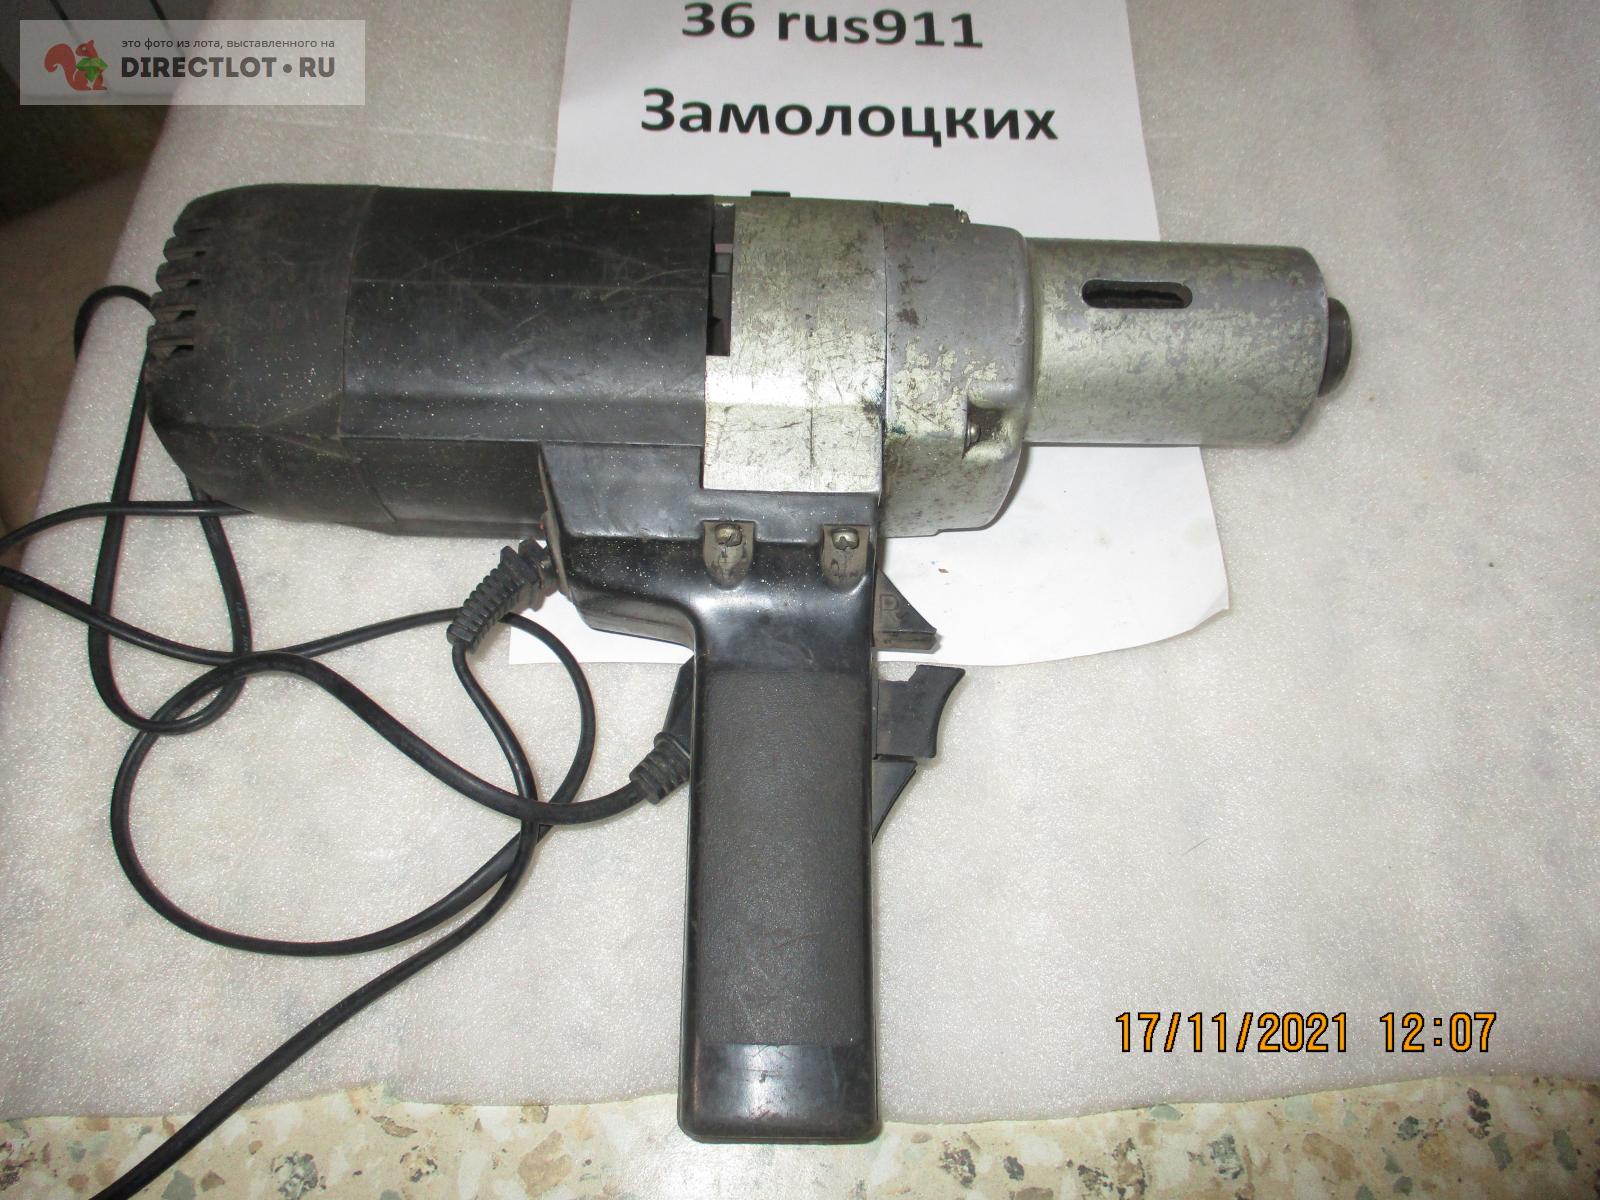 дрель электрическая 220 вольт ИЭ 1305  в Воронеже цена 3750 Р на .